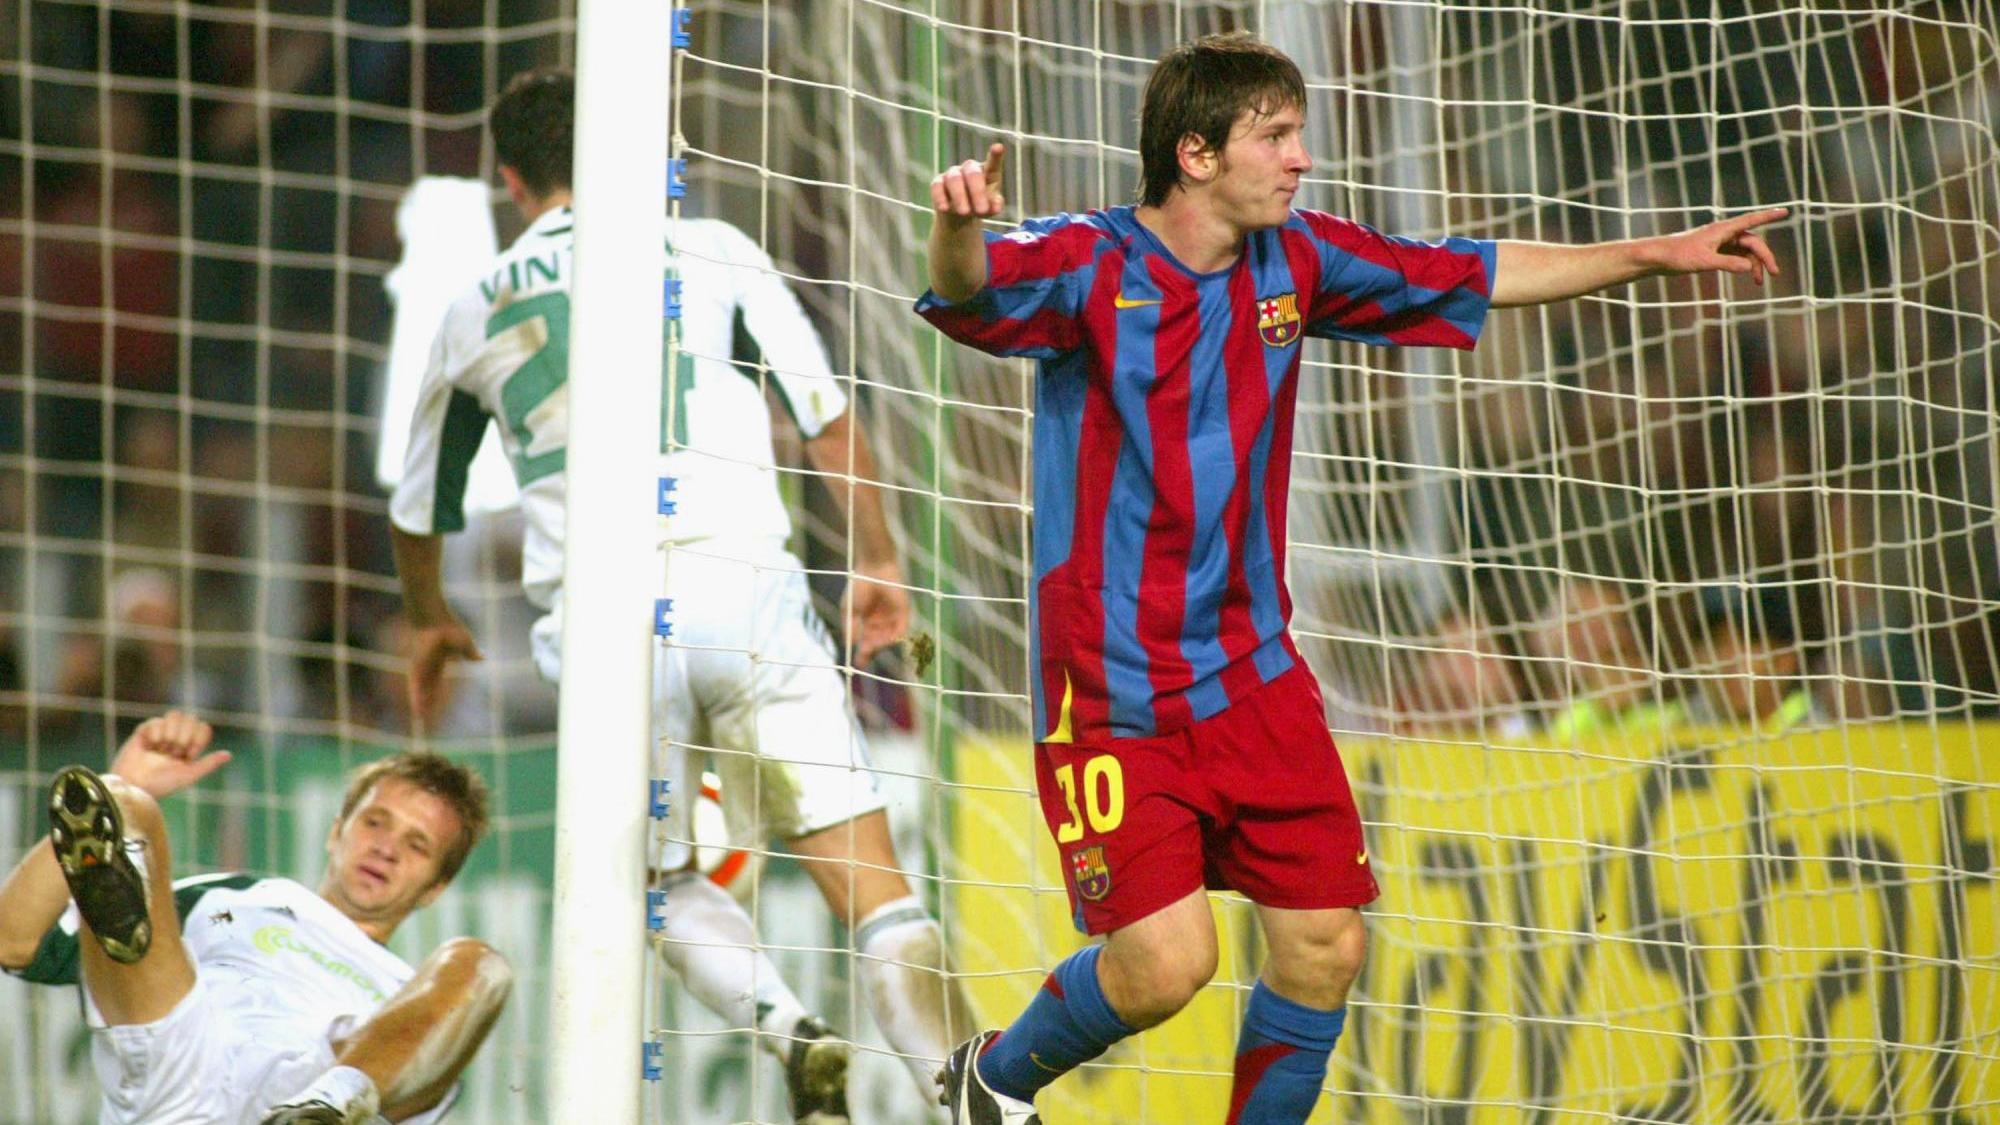 Le 2 novembre 2005 face au Panathinaïkos, Lionel Messi inscrit le premier de ses 74 buts en Ligue des Champions.
